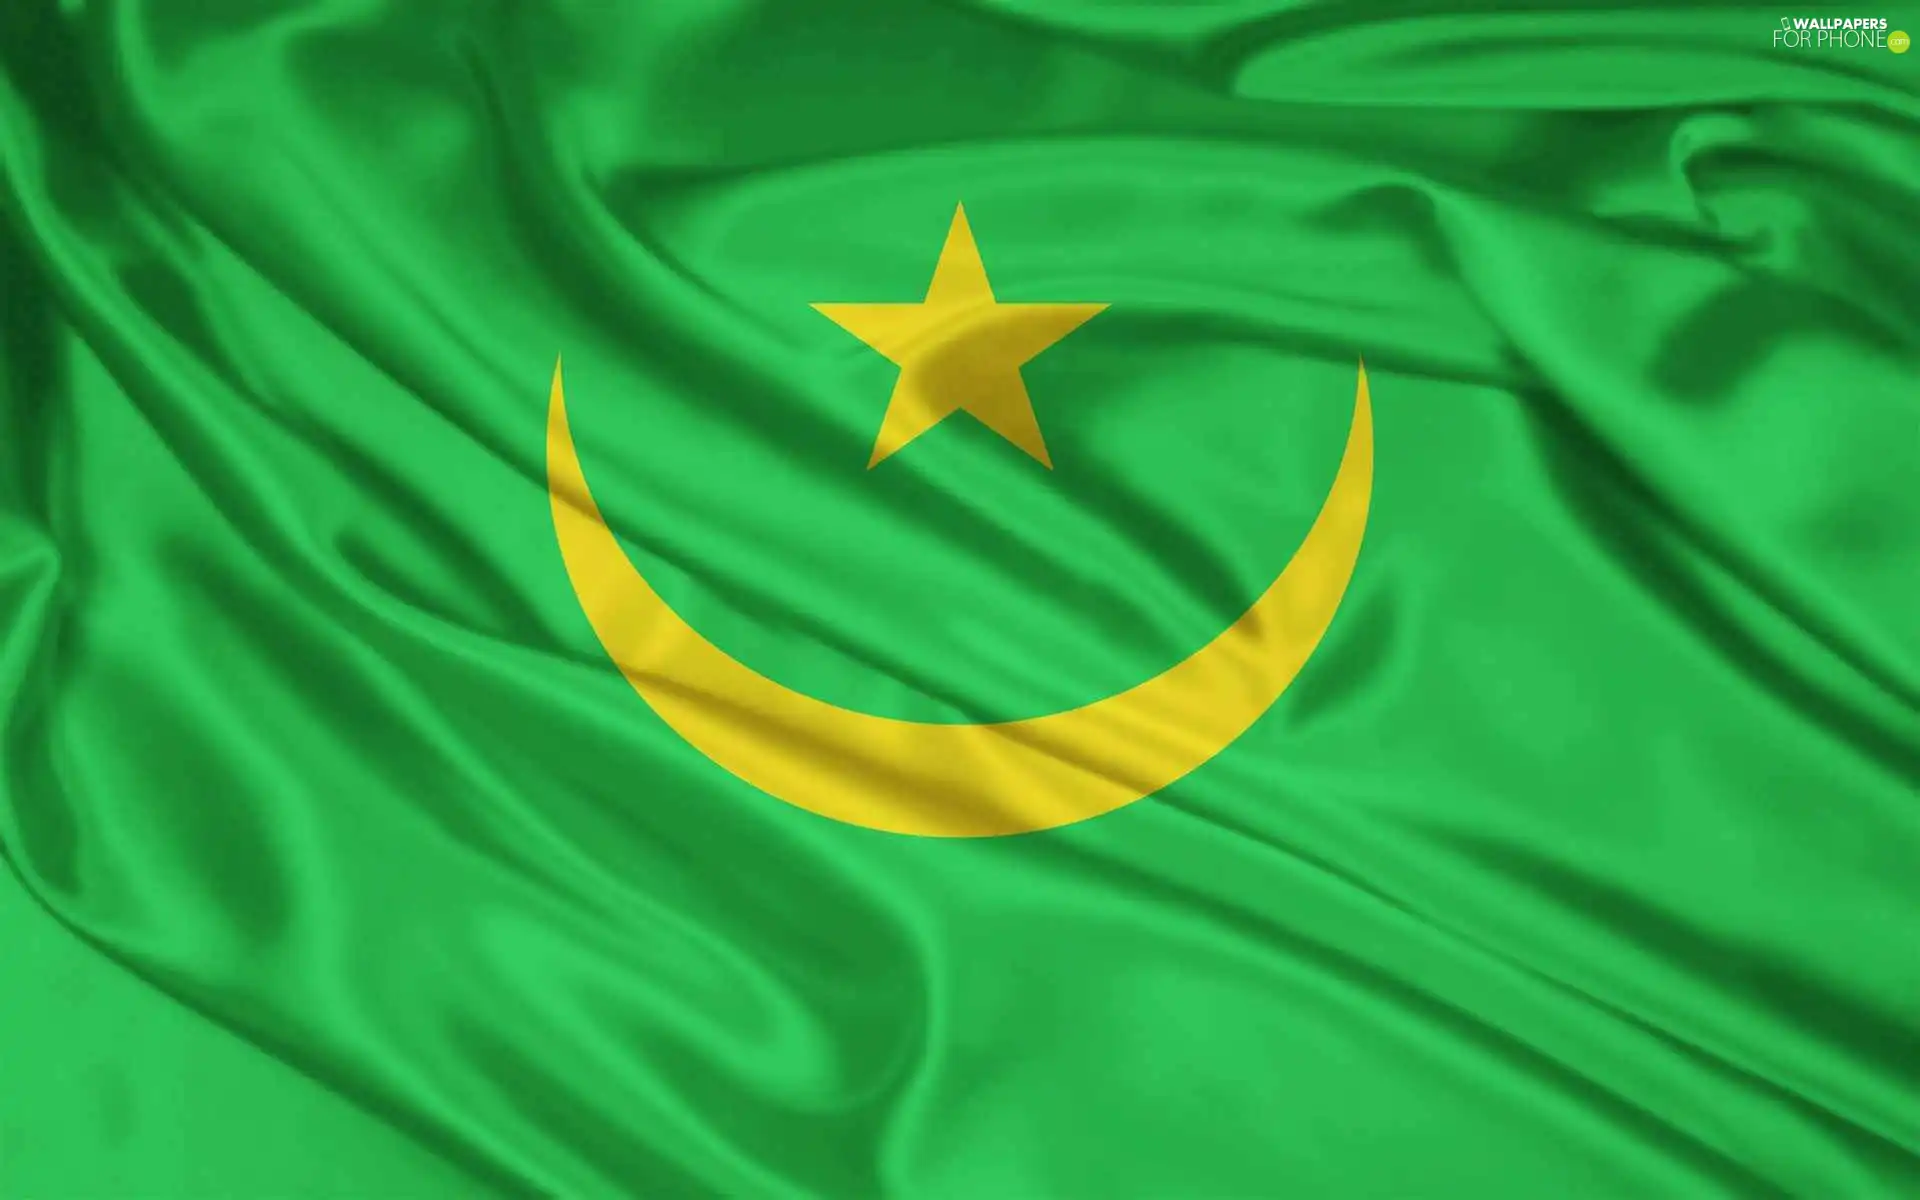 flag, Mauritania